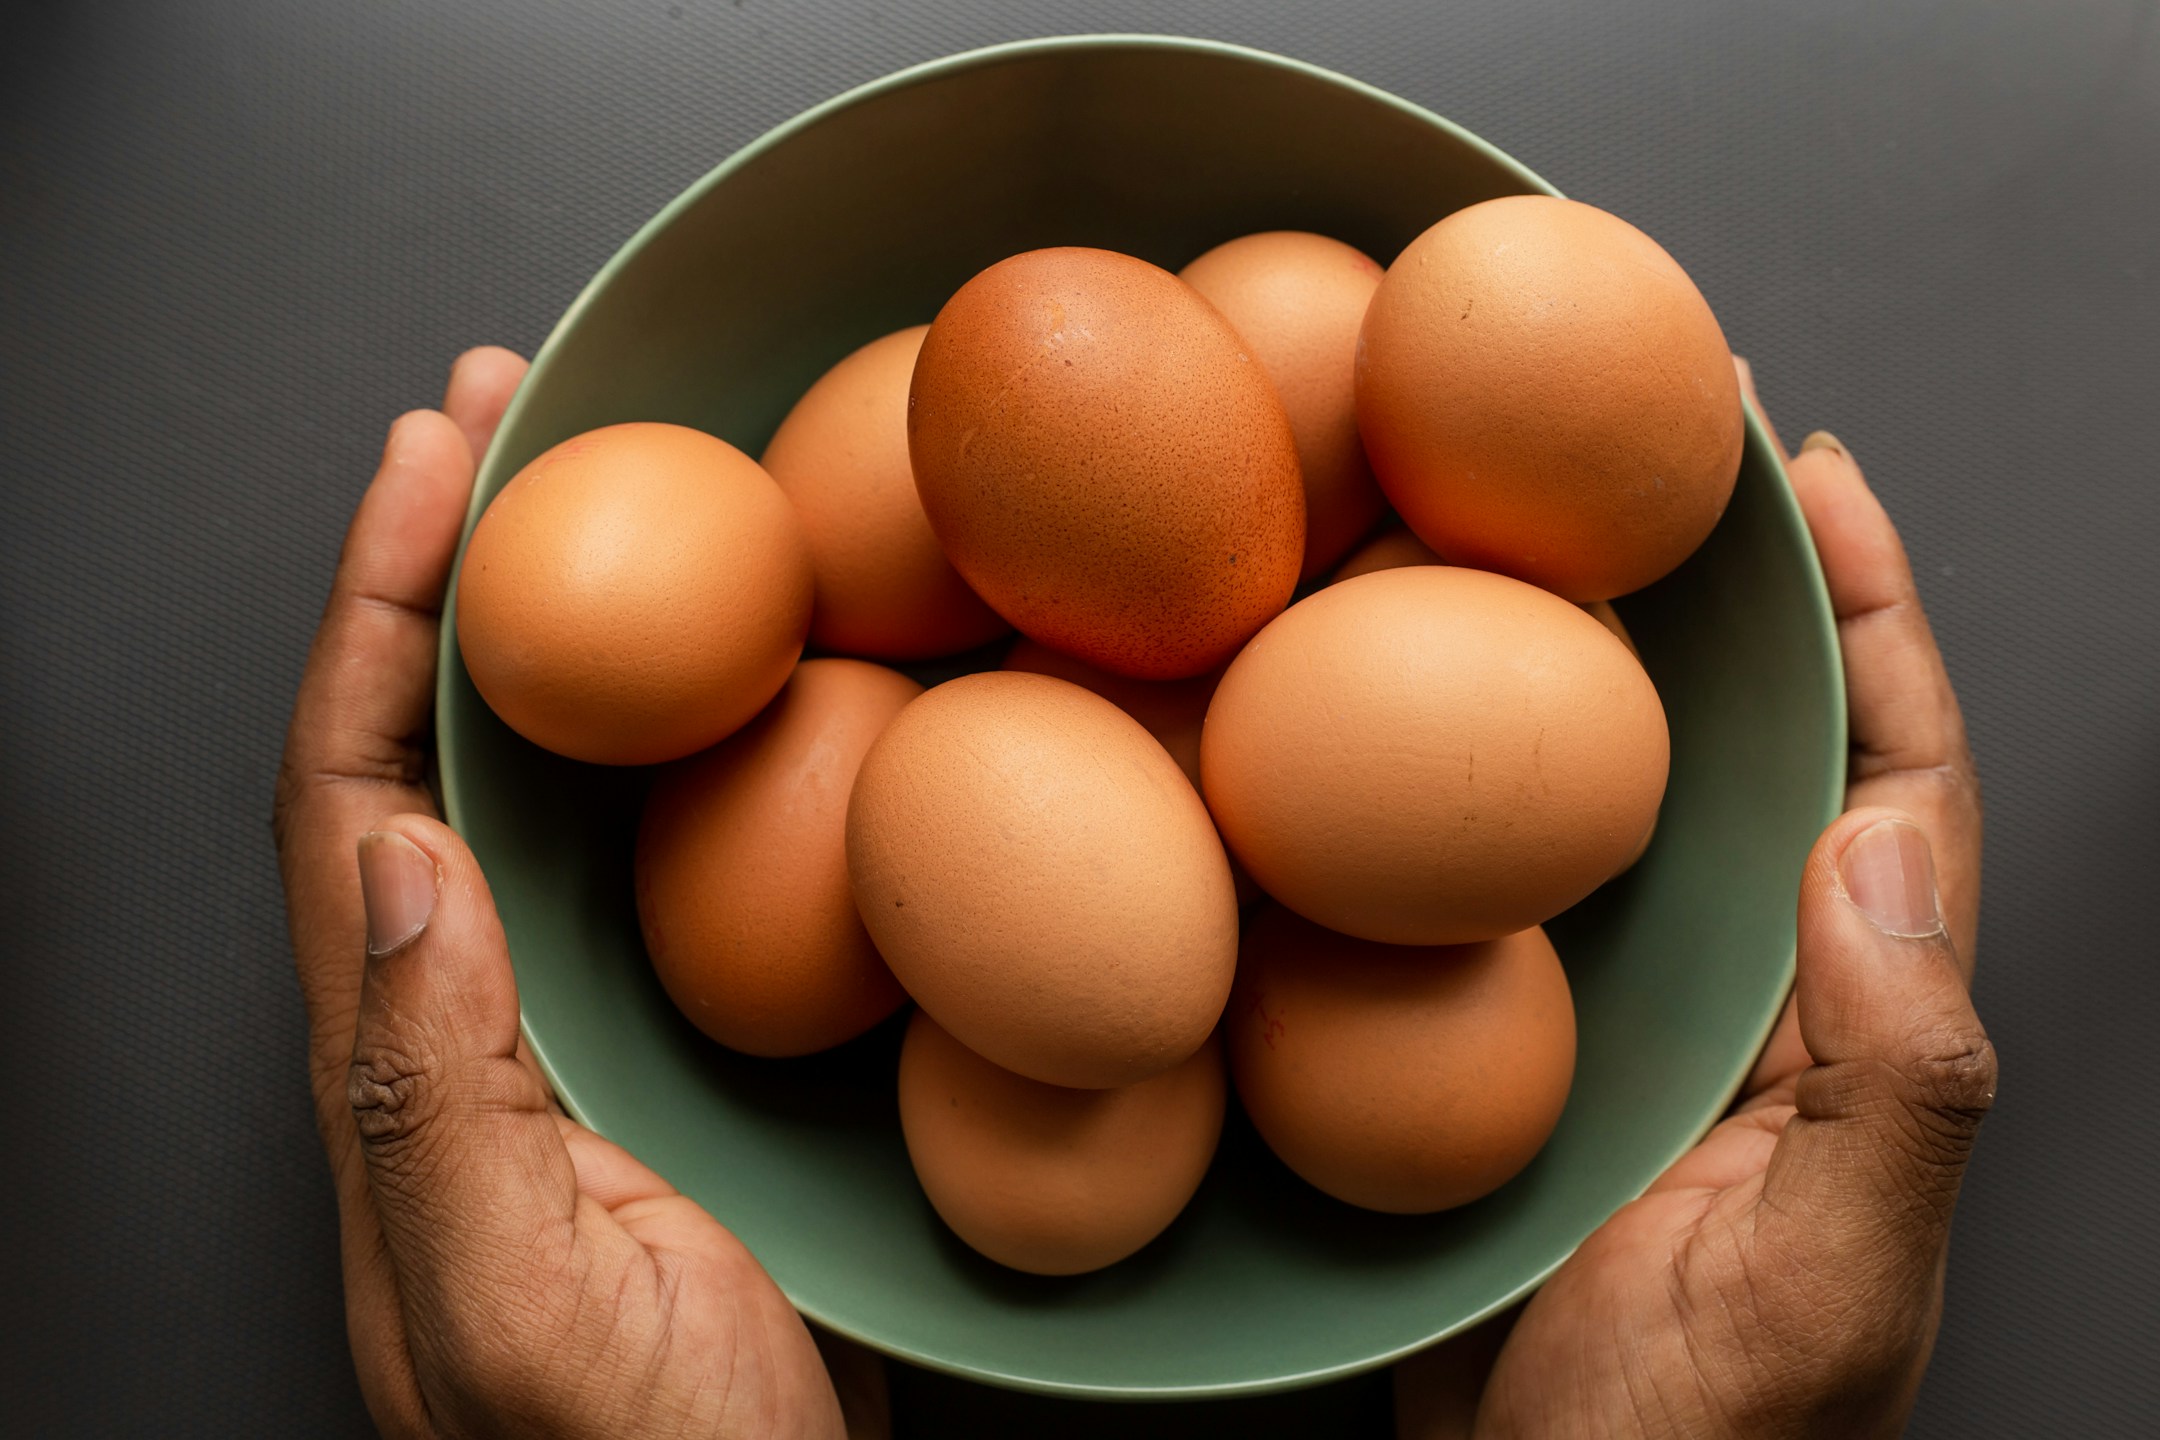 जानें उबला अंडा या आमलेट कौन है ज्यादा फायदेमंद